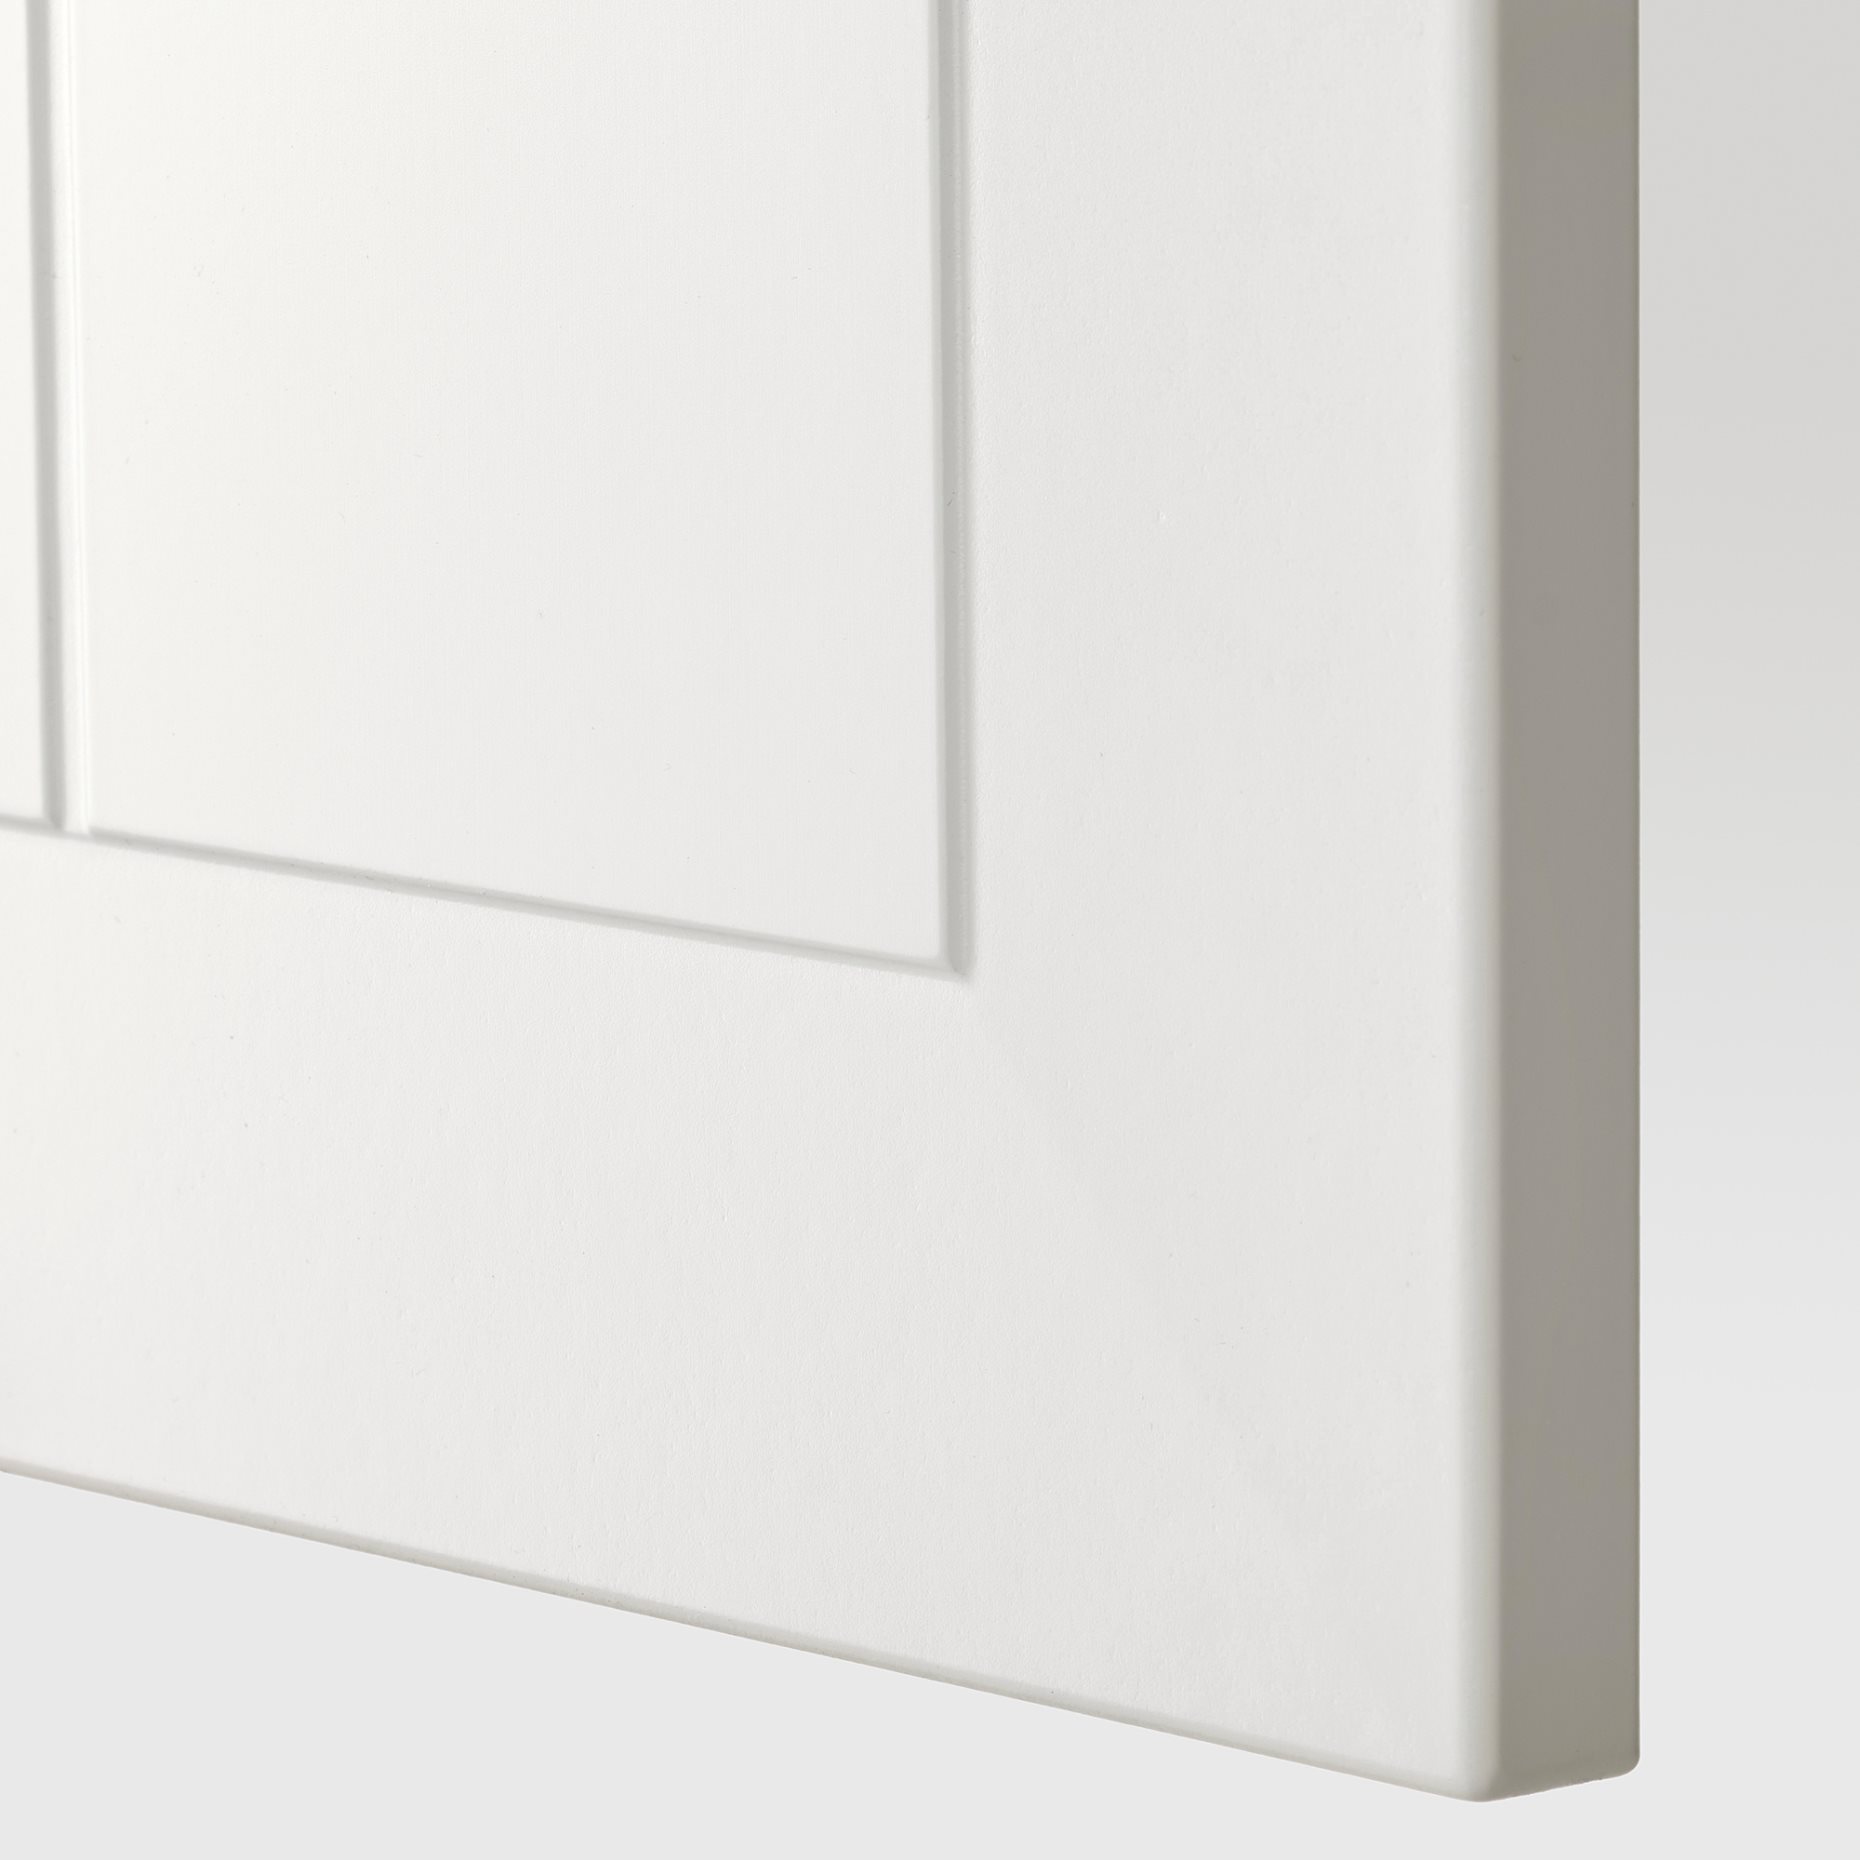 METOD, ψηλό ντουλάπι για φούρνο με 2 πόρτες/ράφια, 60x60x240 cm, 194.595.07